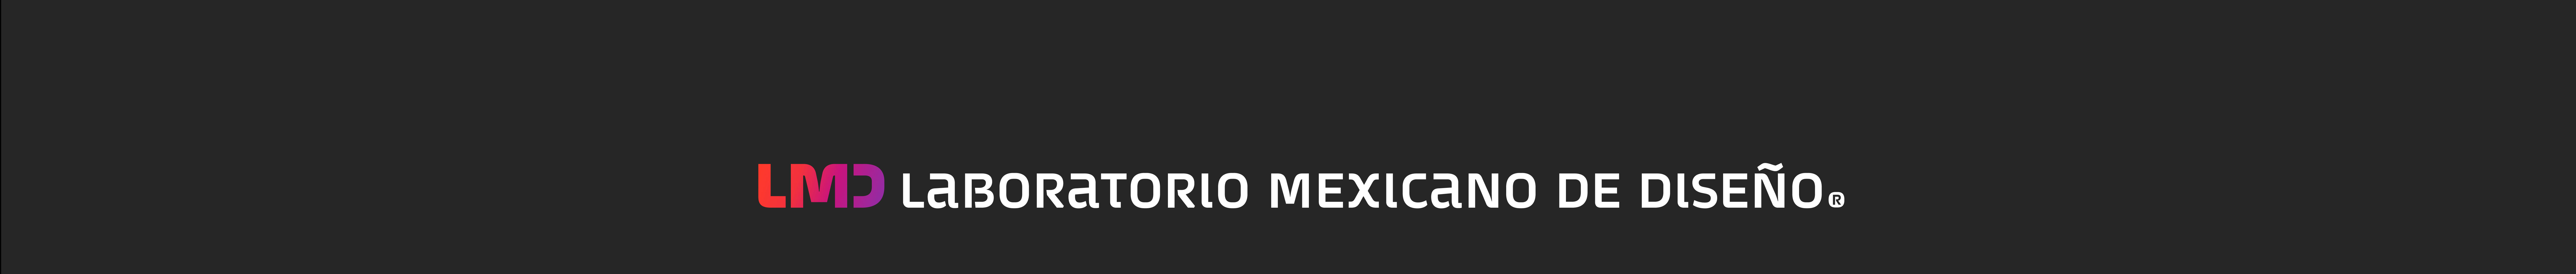 Laboratorio Mexicano de Diseño LMD's profile banner